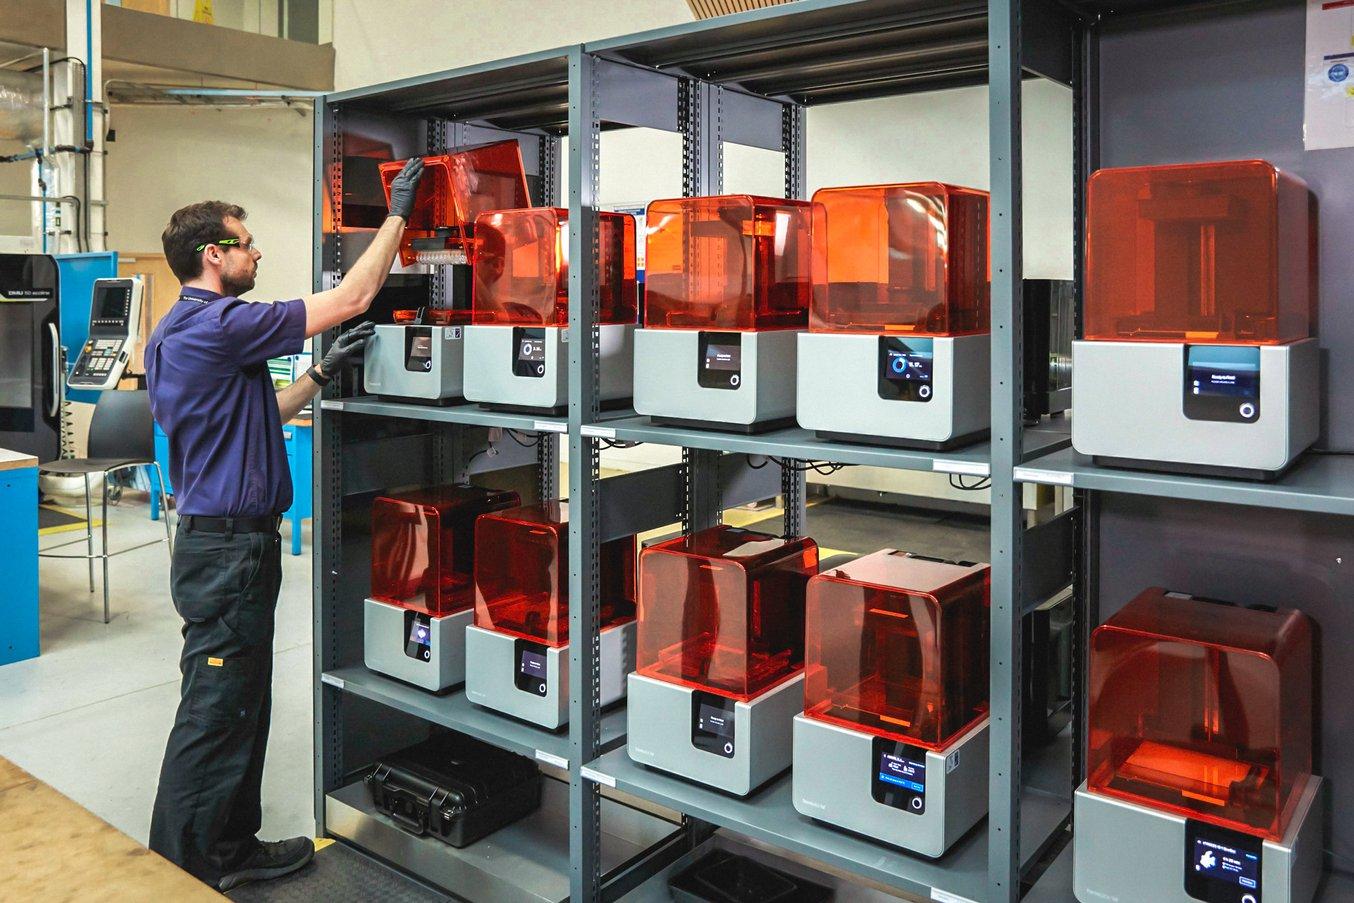 Le groupe Conception et Prototypage de l'Advanced Manufacturing Research Center (AMRC) gère une station de fabrication additive en libre accès avec un parc de 12 imprimantes 3D de stéréolithographie (SLA) Formulaire 2.